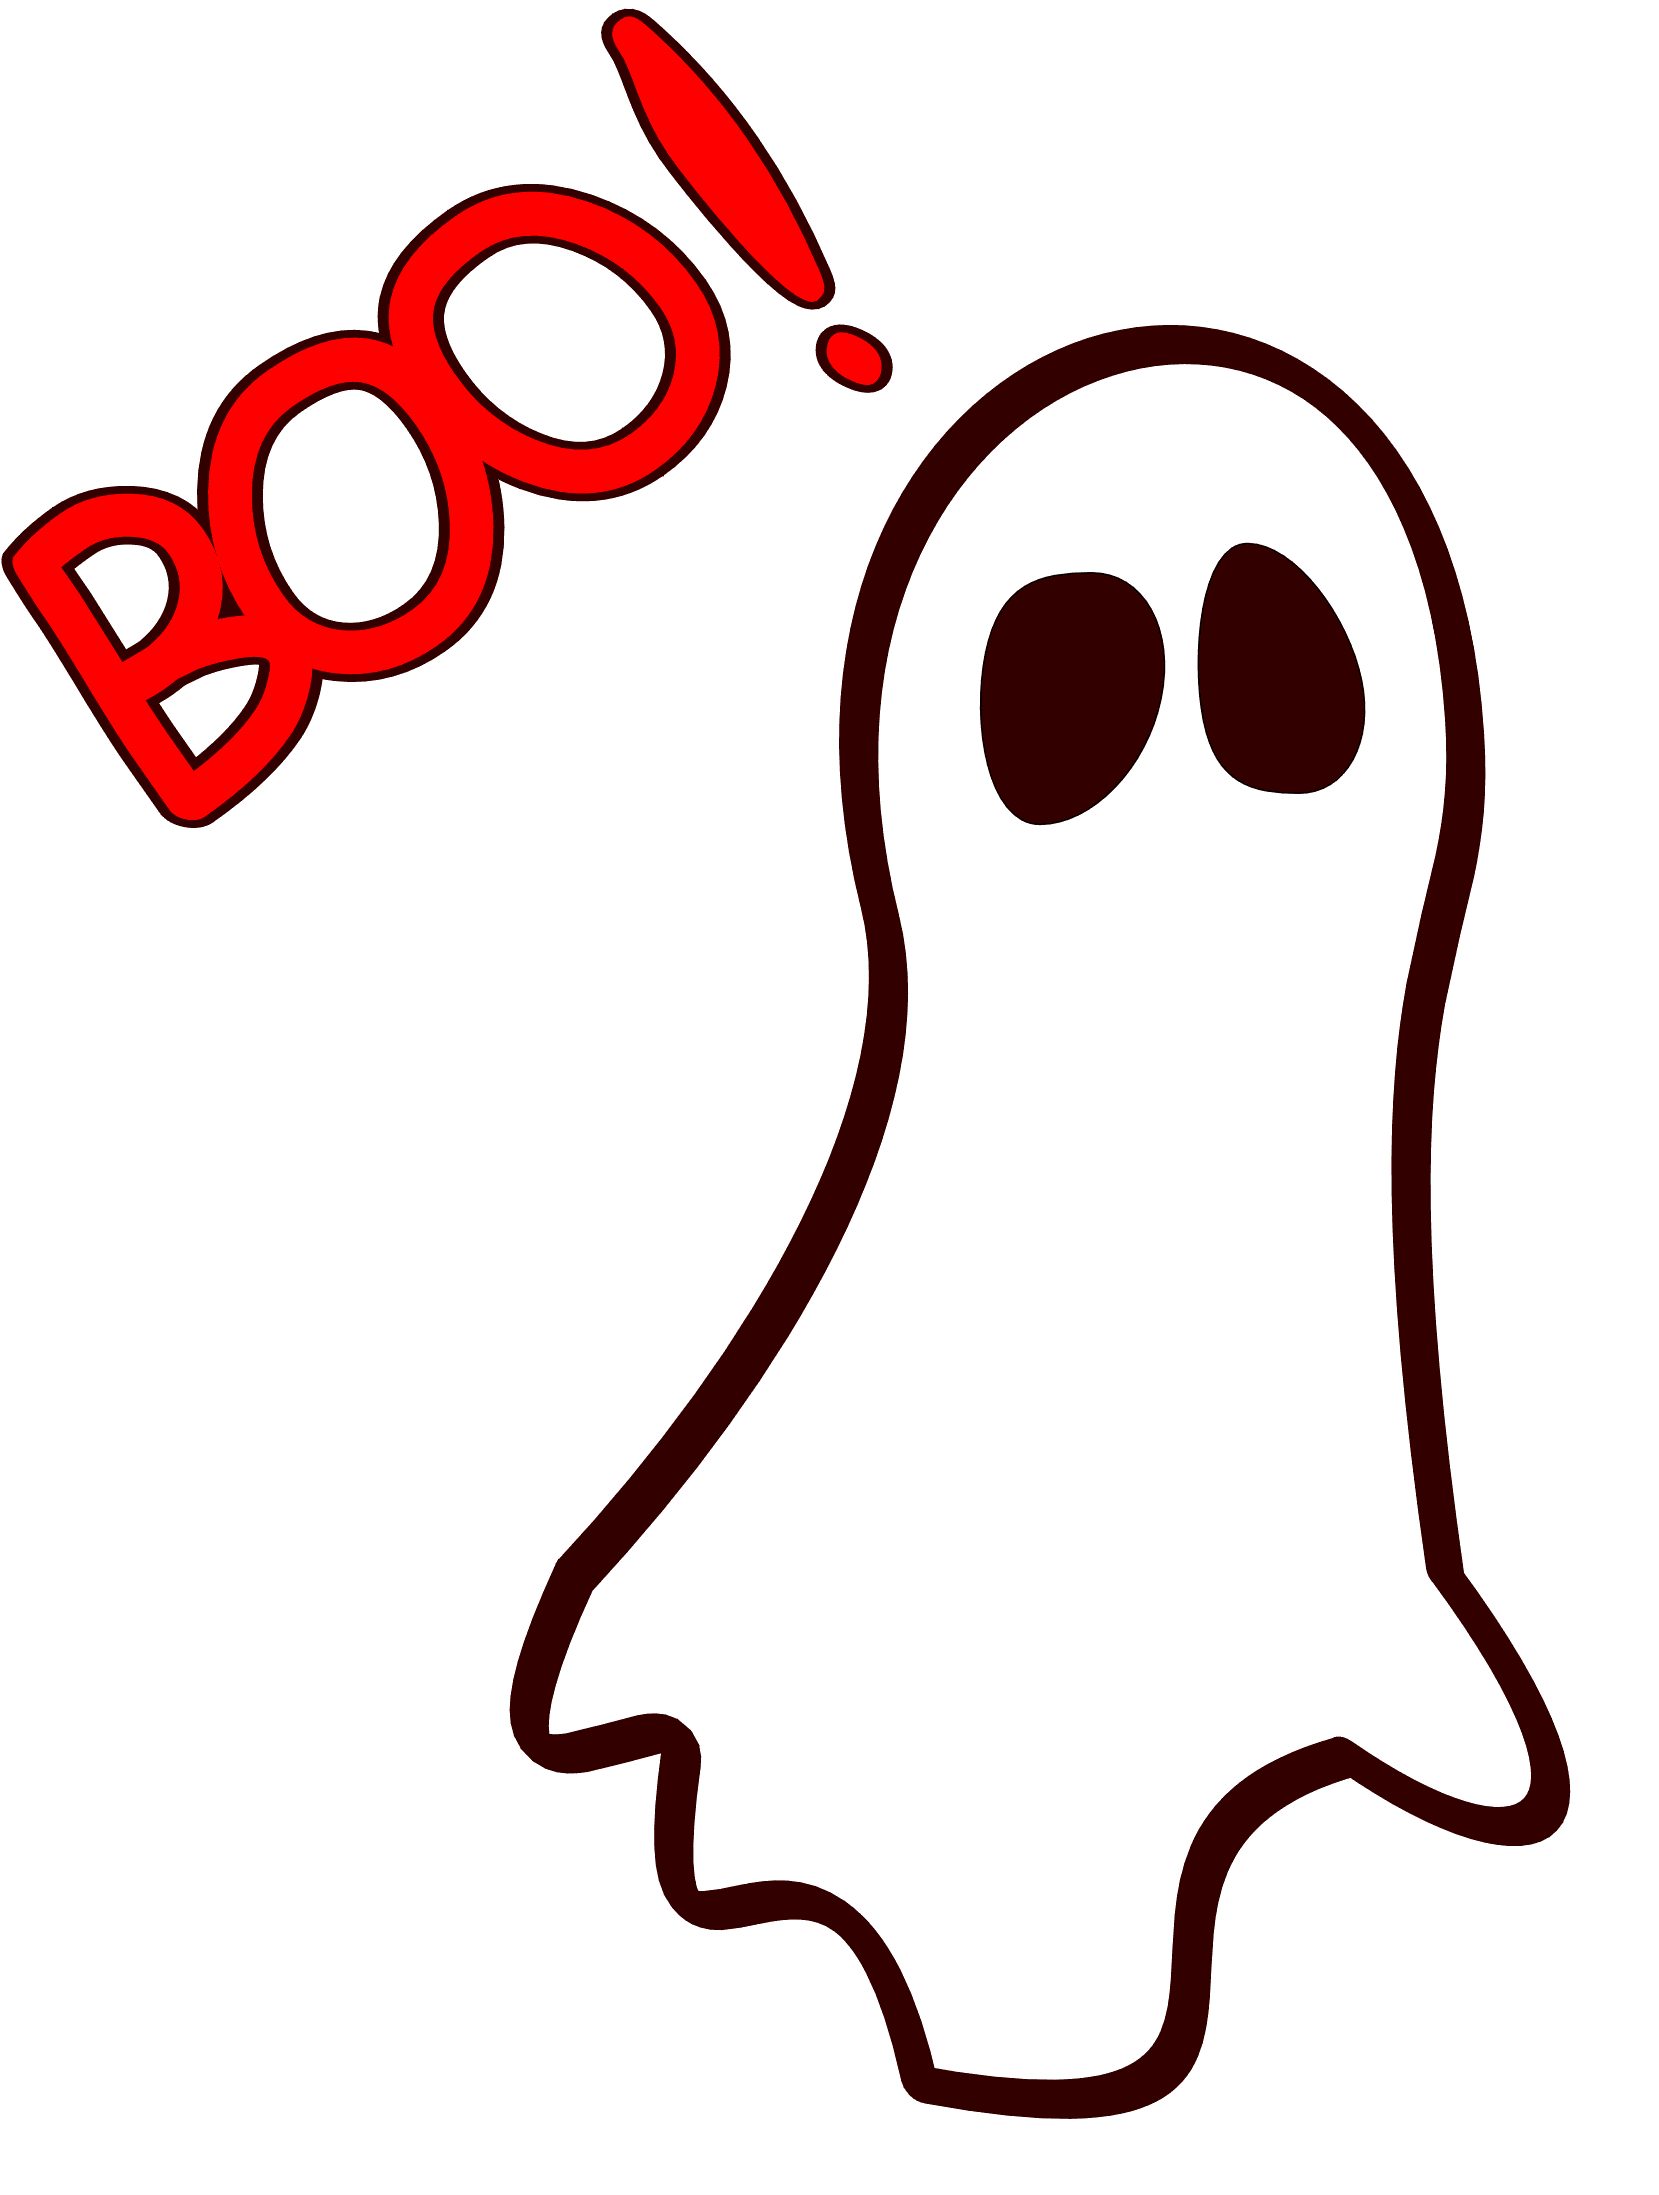 Ghost Saying Boo